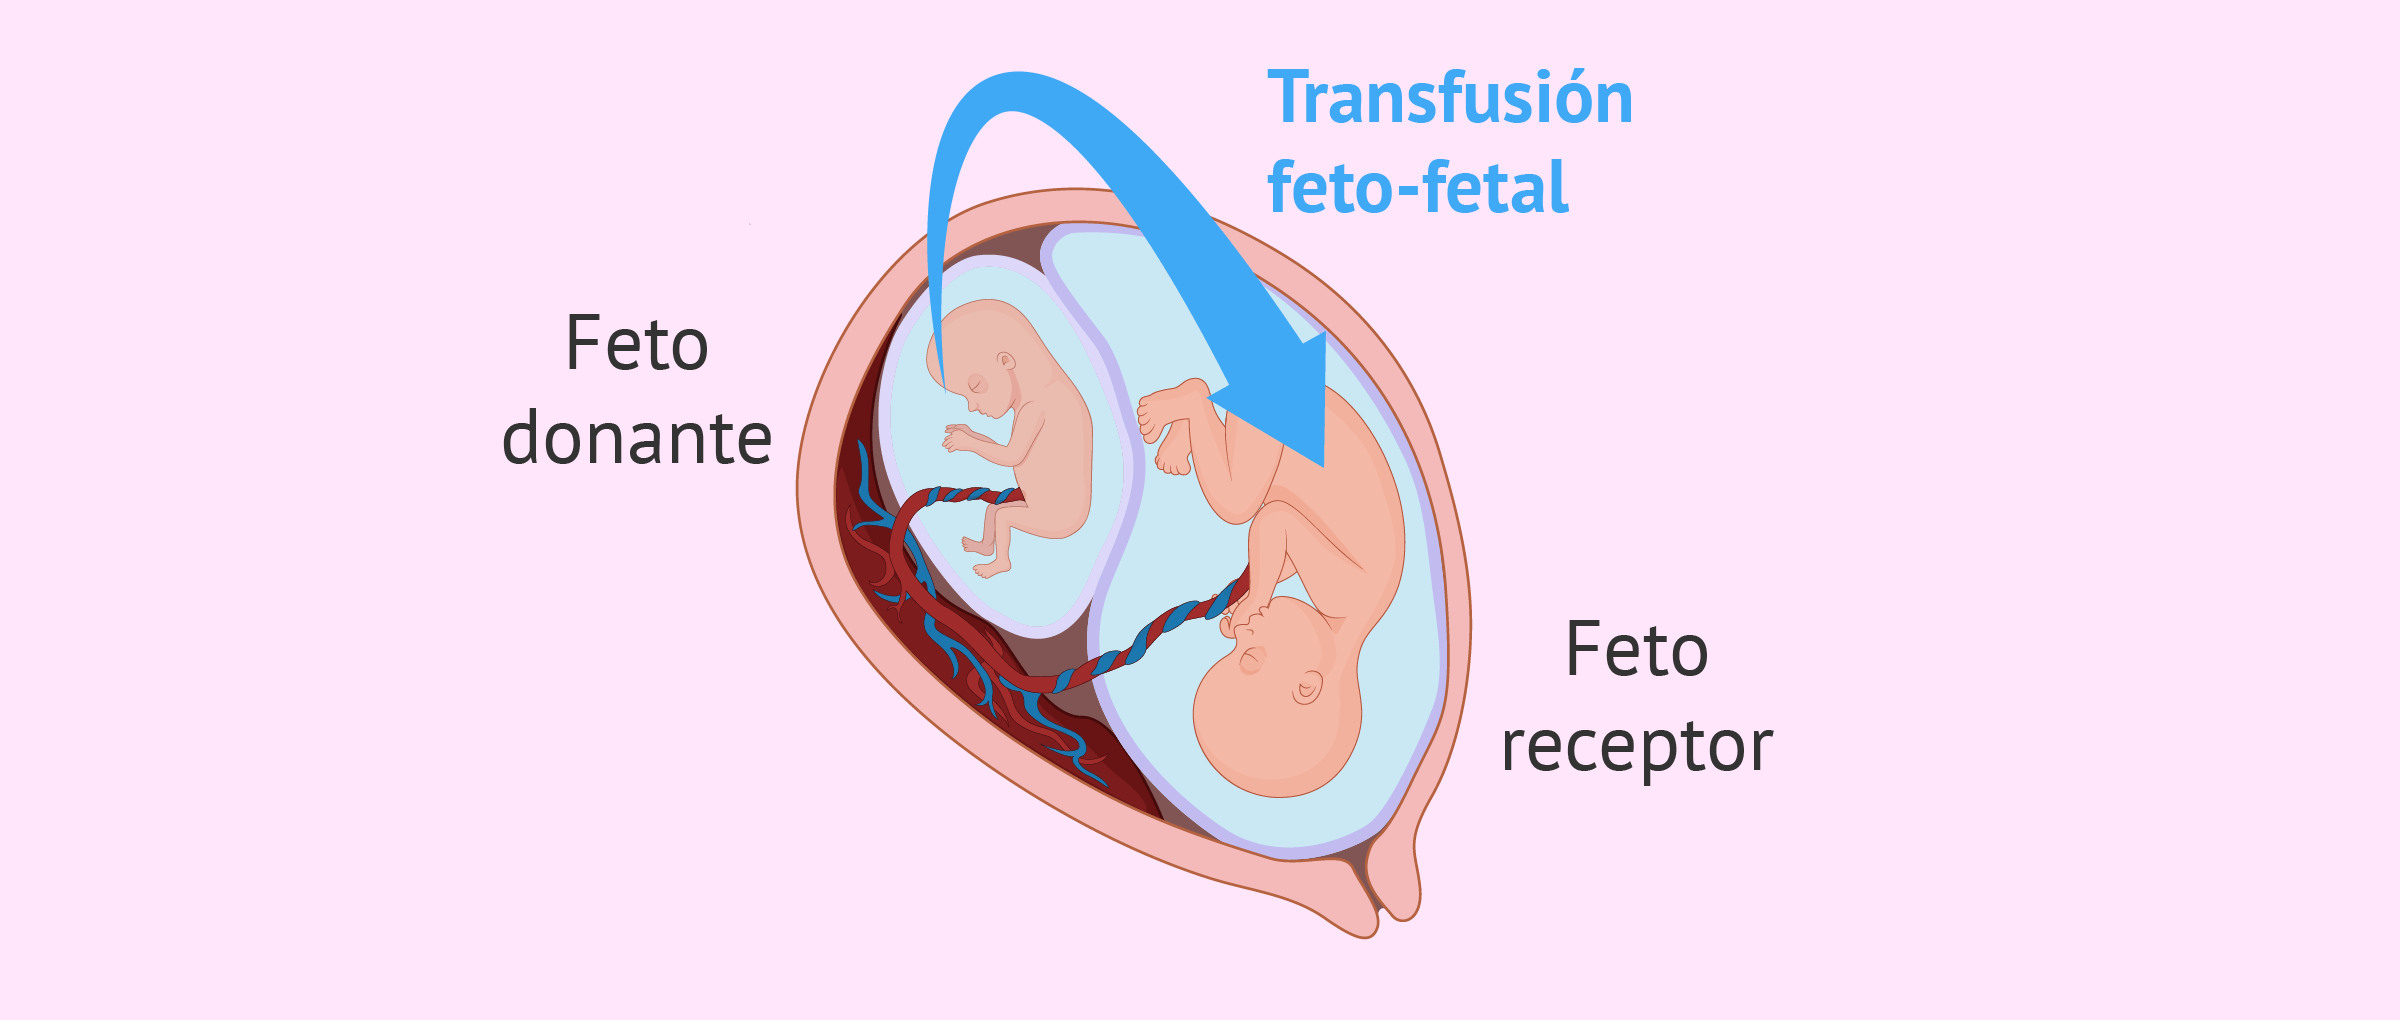 Síndrome de transfusión feto-fetal (STFF)